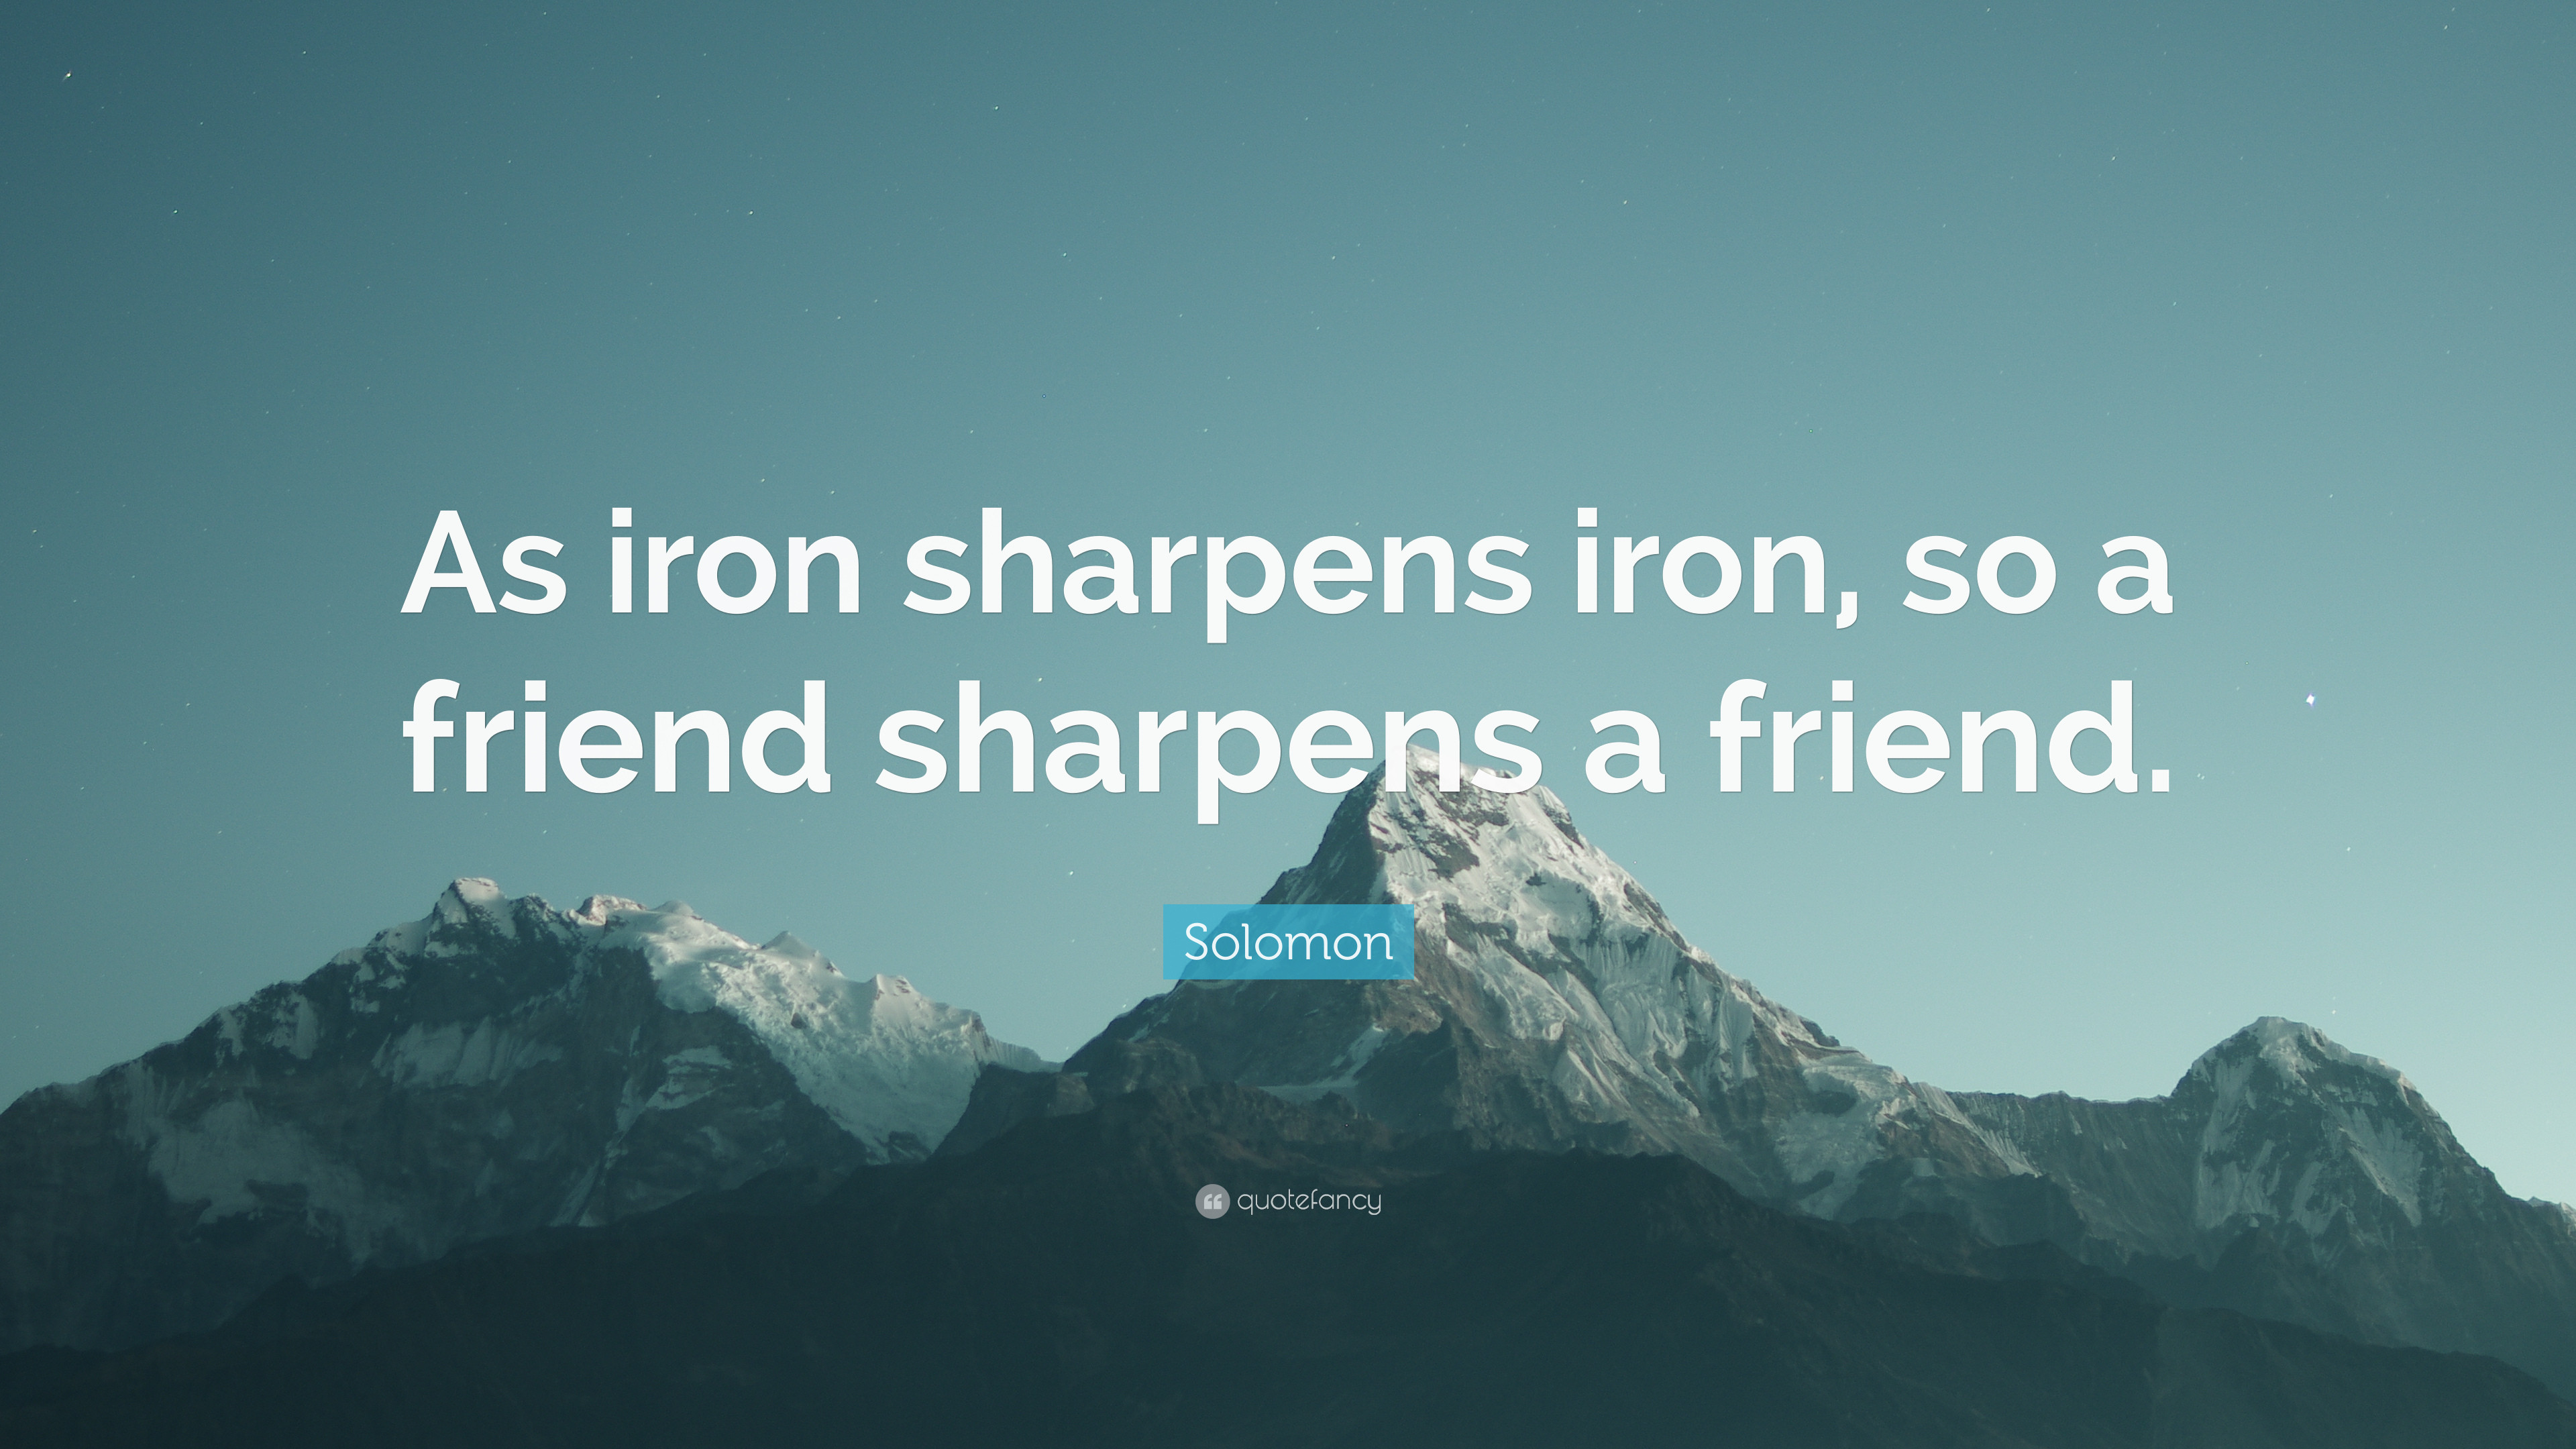 3840x2160 Solomon Quote: “As iron sharpens iron, so a friend sharpens a friend.